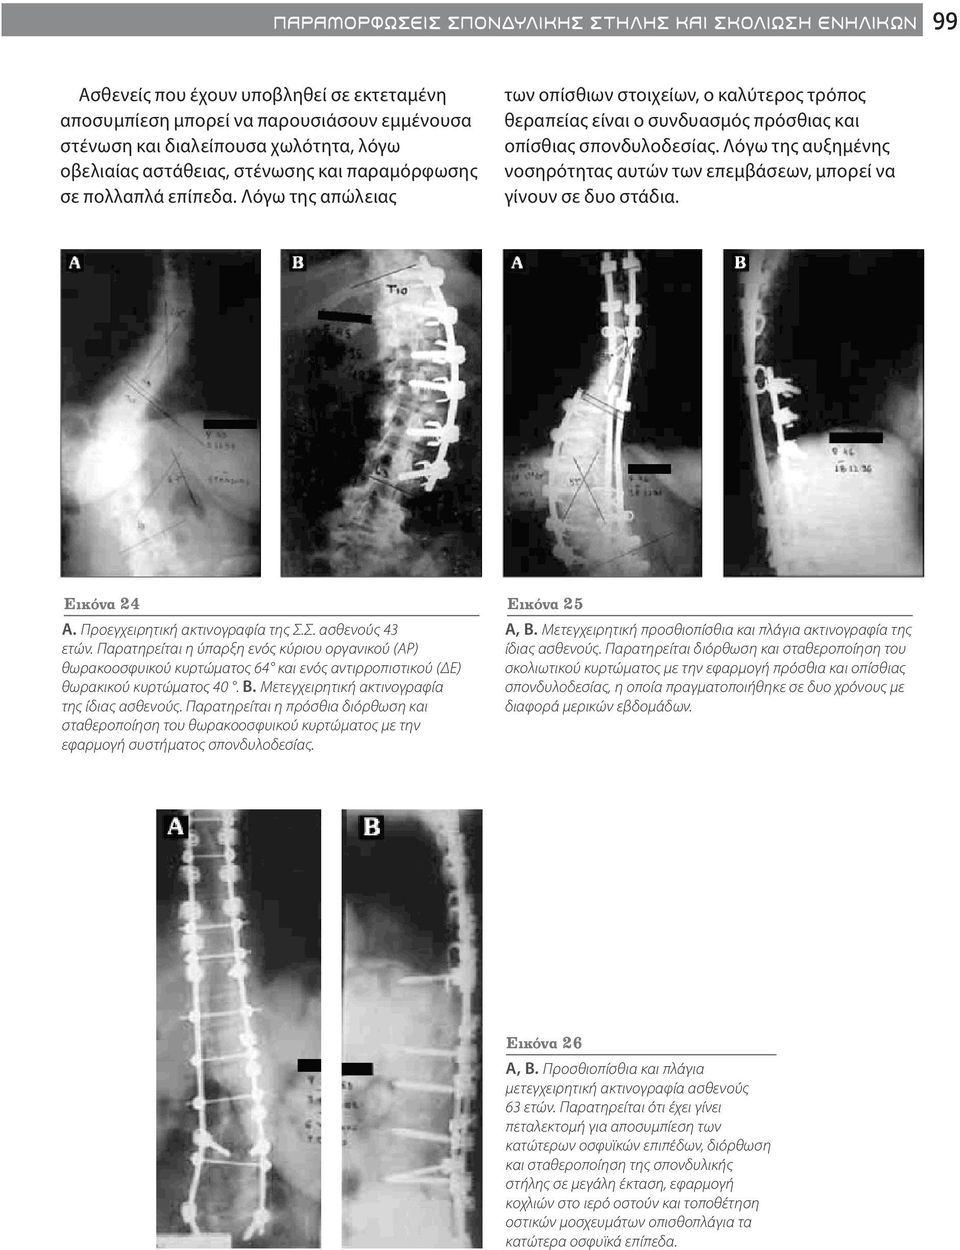 Λόγω της αυξημένης νοσηρότητας αυτών των επεμβάσεων, μπορεί να γίνουν σε δυο στάδια. Εικόνα 24 A. Προεγχειρητική ακτινογραφία της Σ.Σ. ασθενούς 43 ετών.